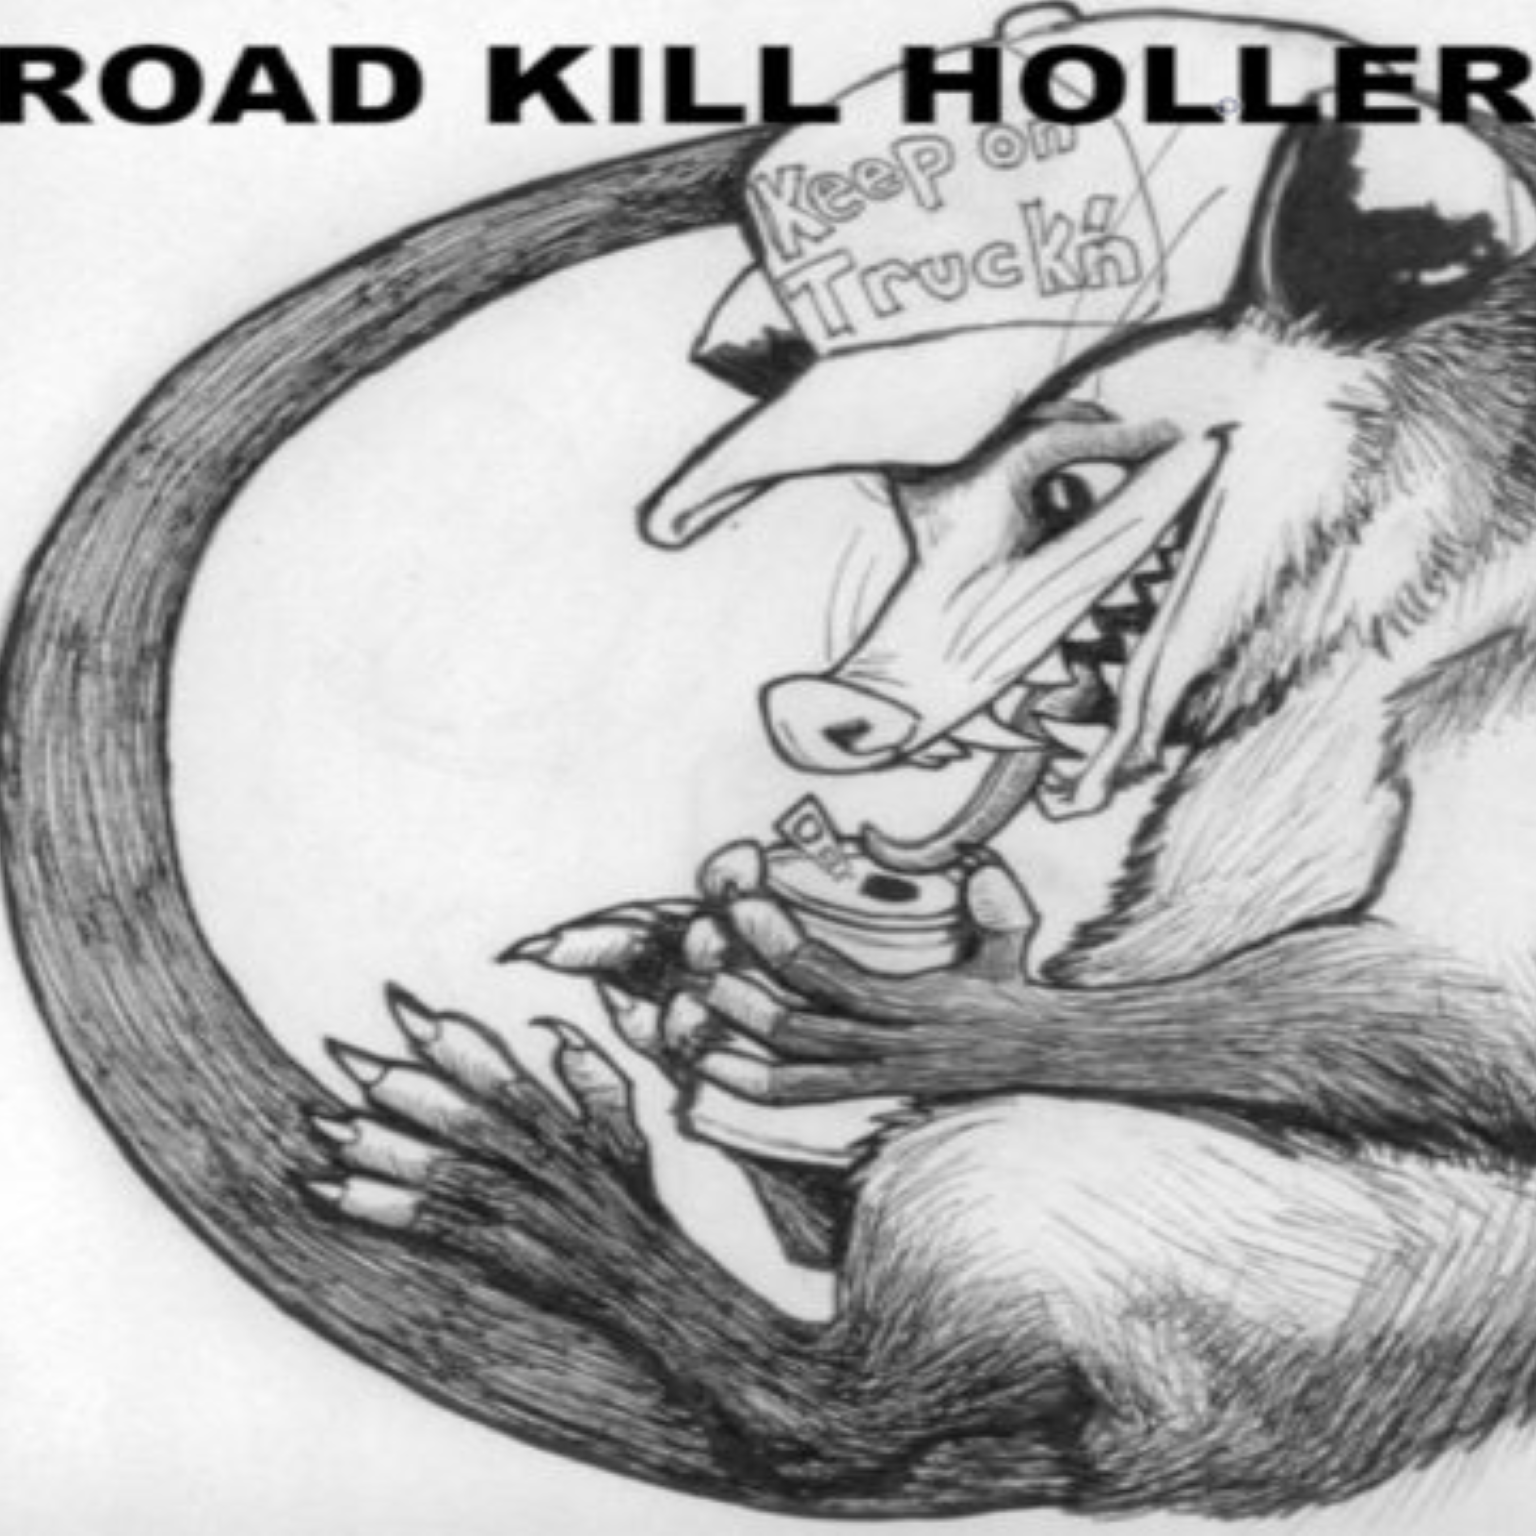 Road Kill Holler Radio